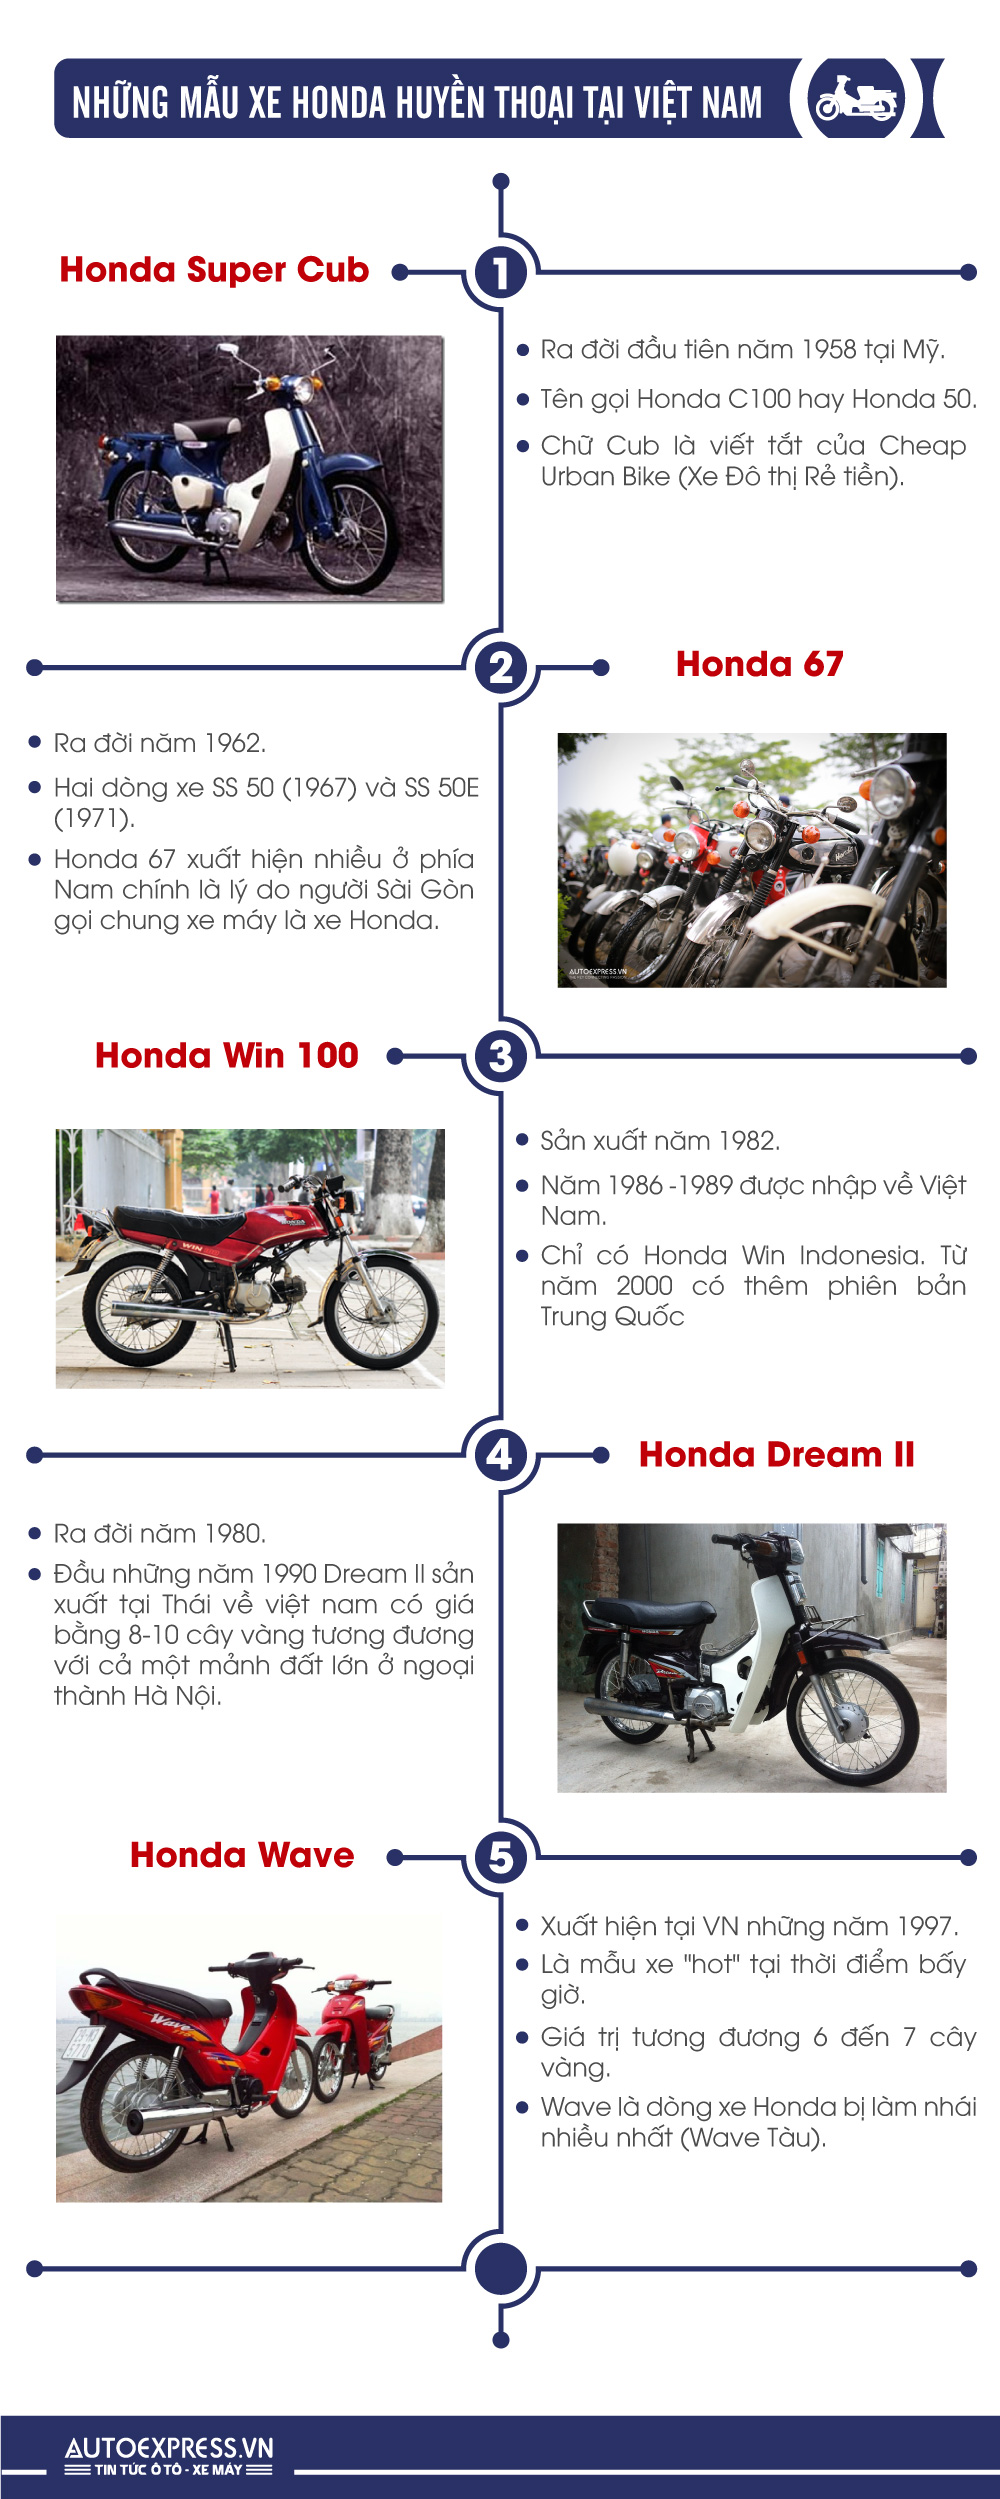 Các mẫu xe Honda huyền thoại đi cùng năm tháng tại Việt Nam